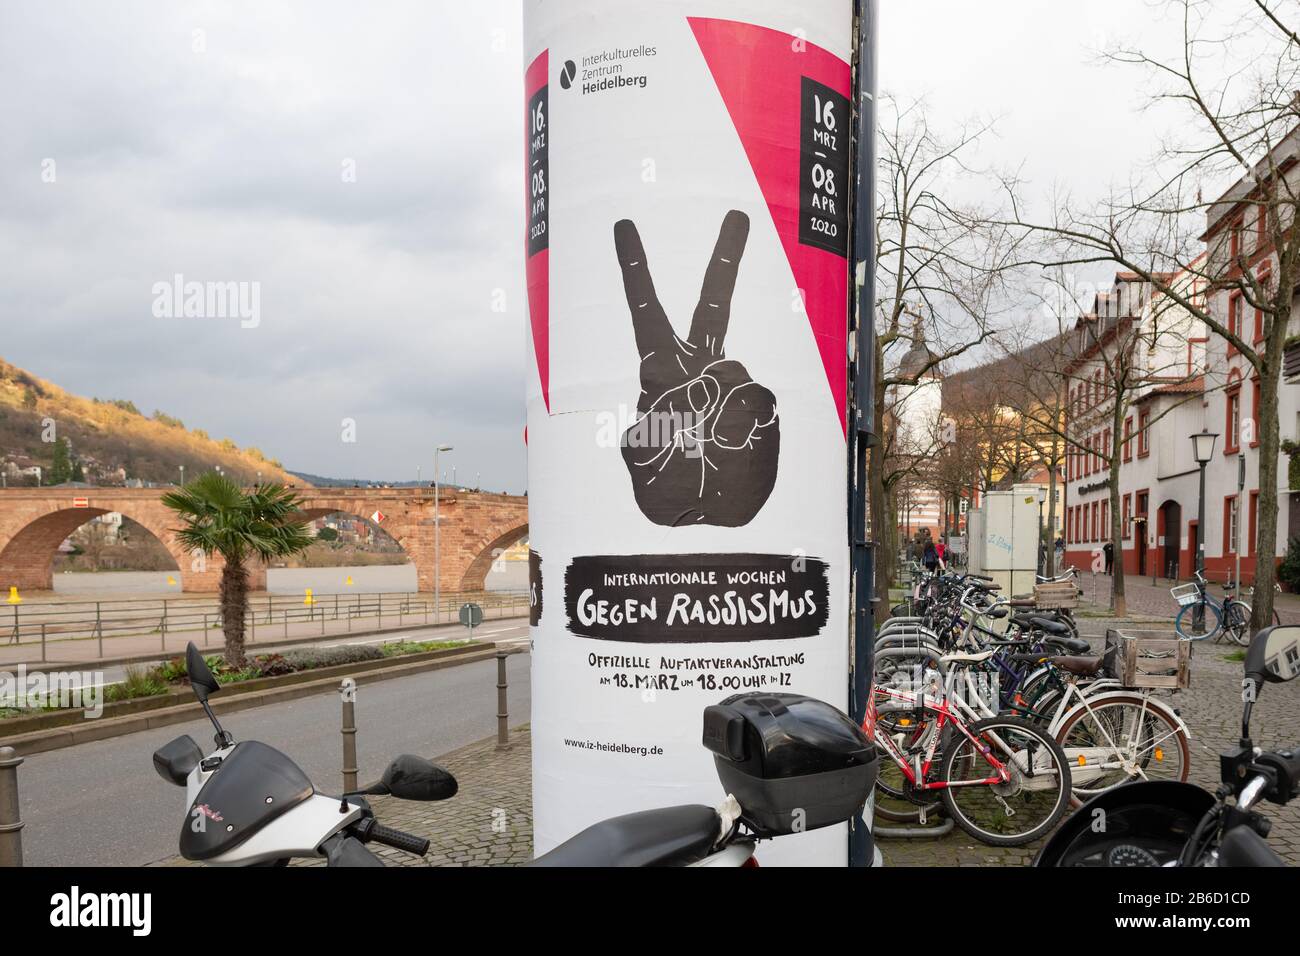 Settimane Internazionali Contro Il Razzismo 2020 Poster Pubblicitario, Heidelberg, Germania Foto Stock